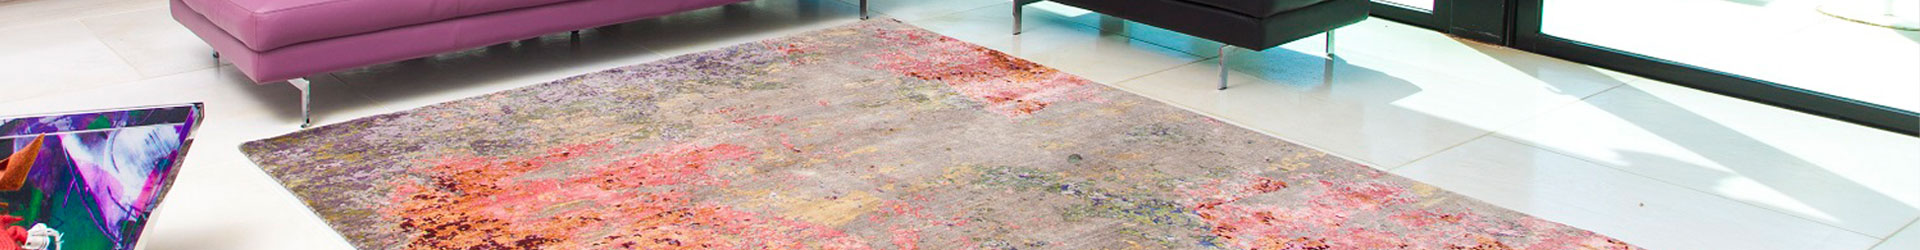 בחירת שטיח בהתאם לסוג הרצפה - איך עושים את זה נכון?